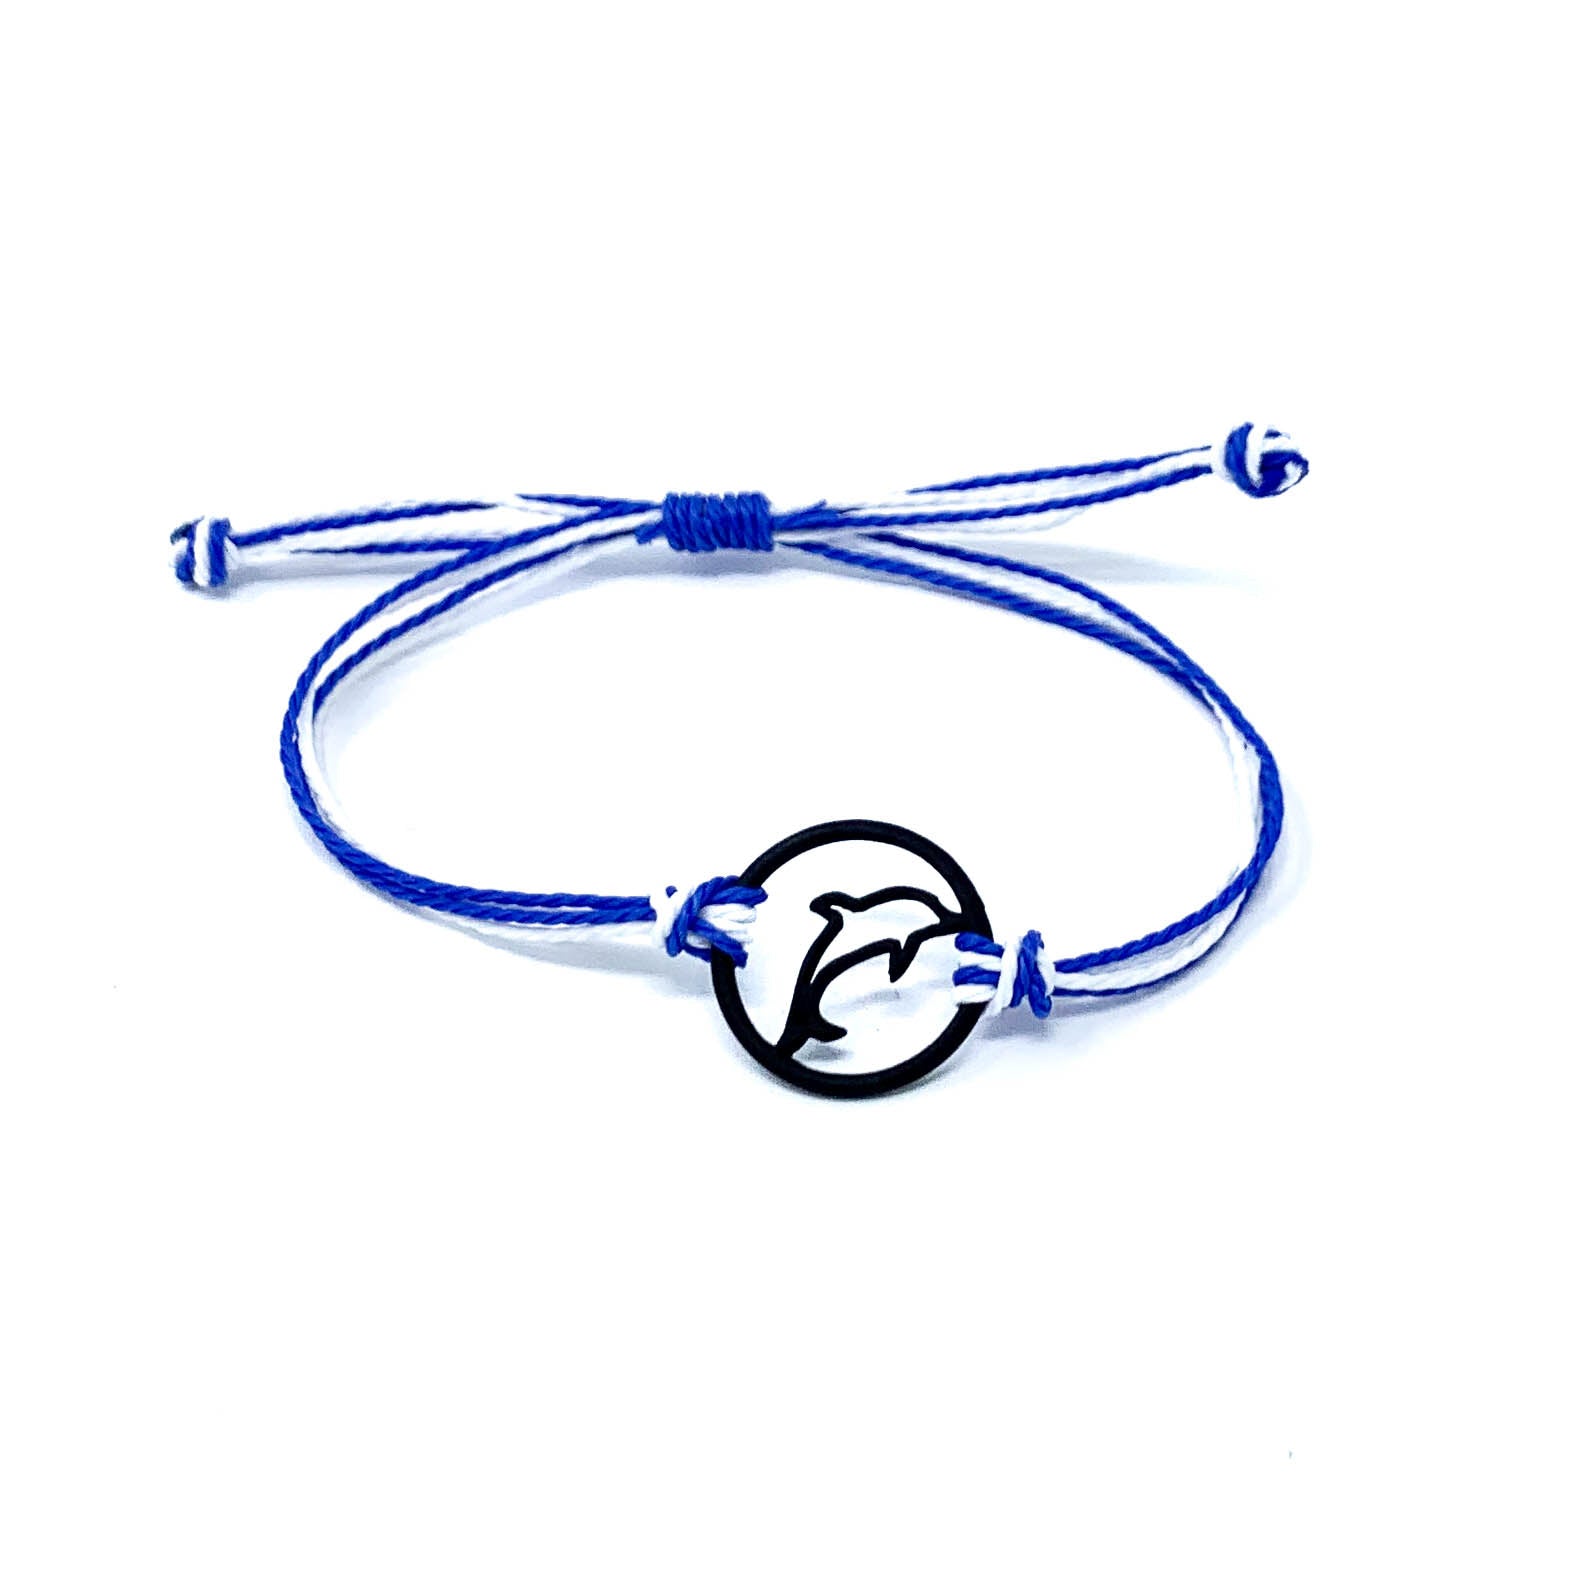 blue dolphin silhouette string bracelet